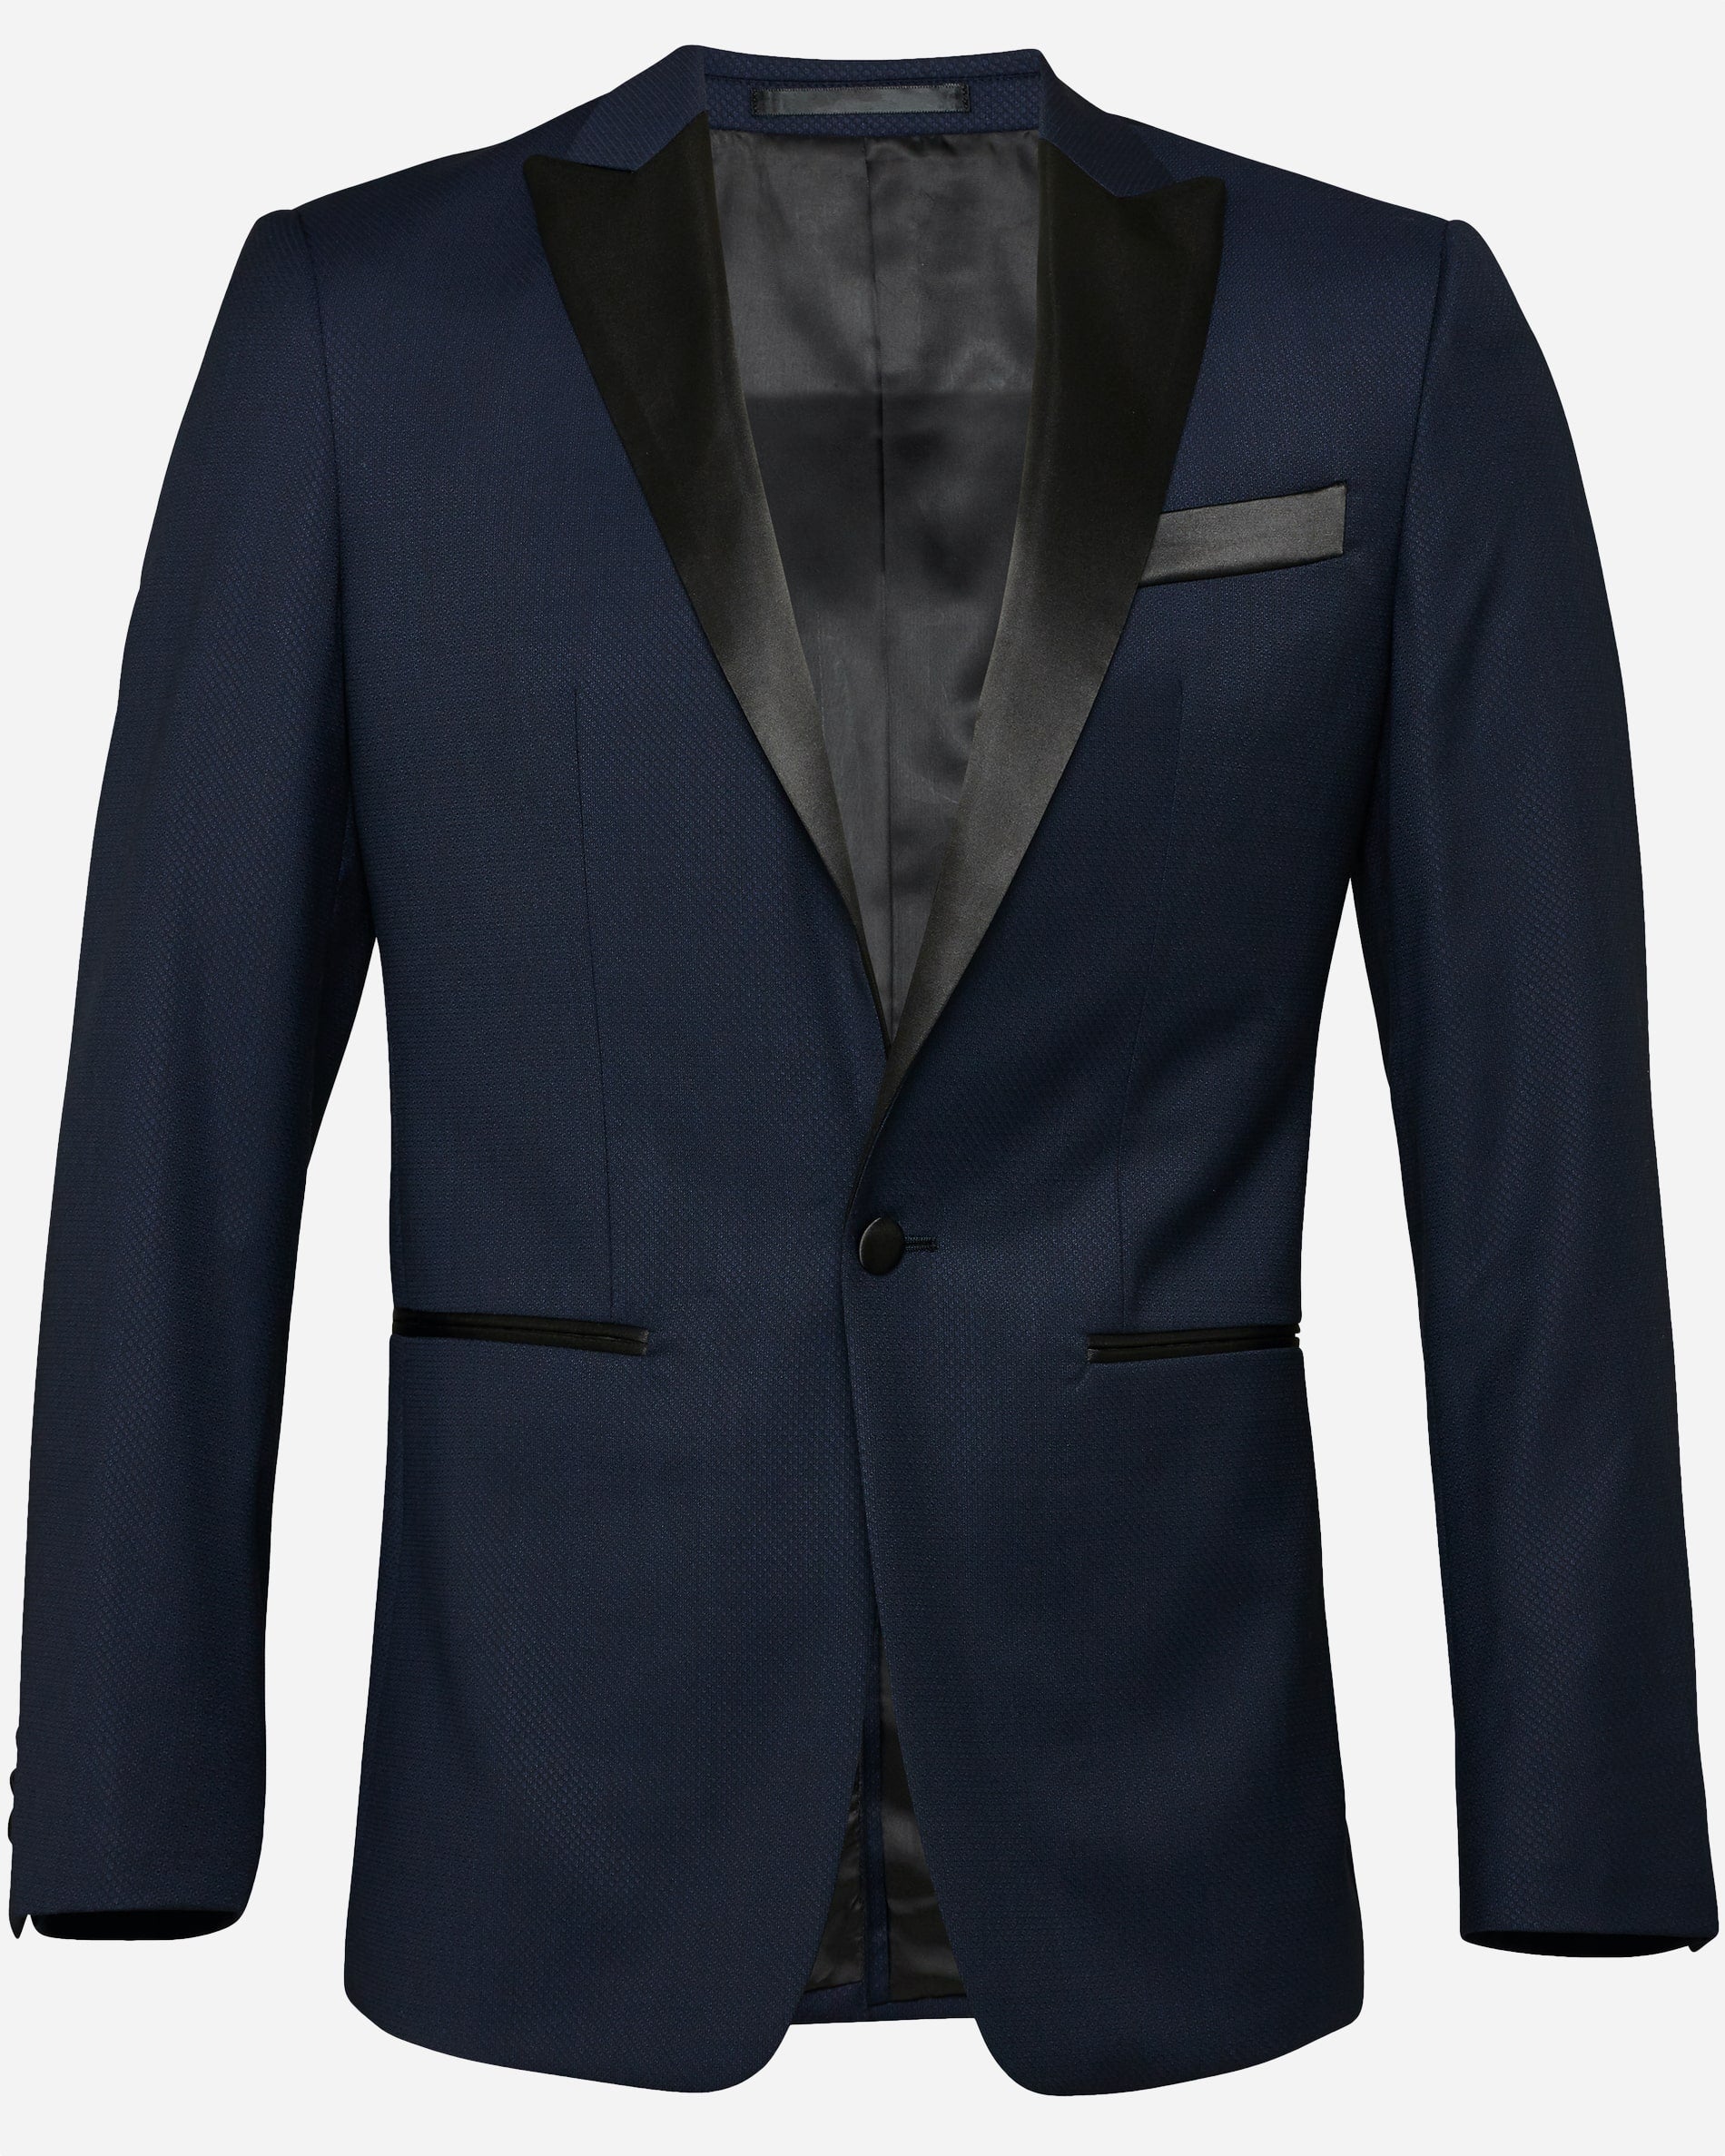 Oscar Dinner Suit - Men's Suits at Menzclub